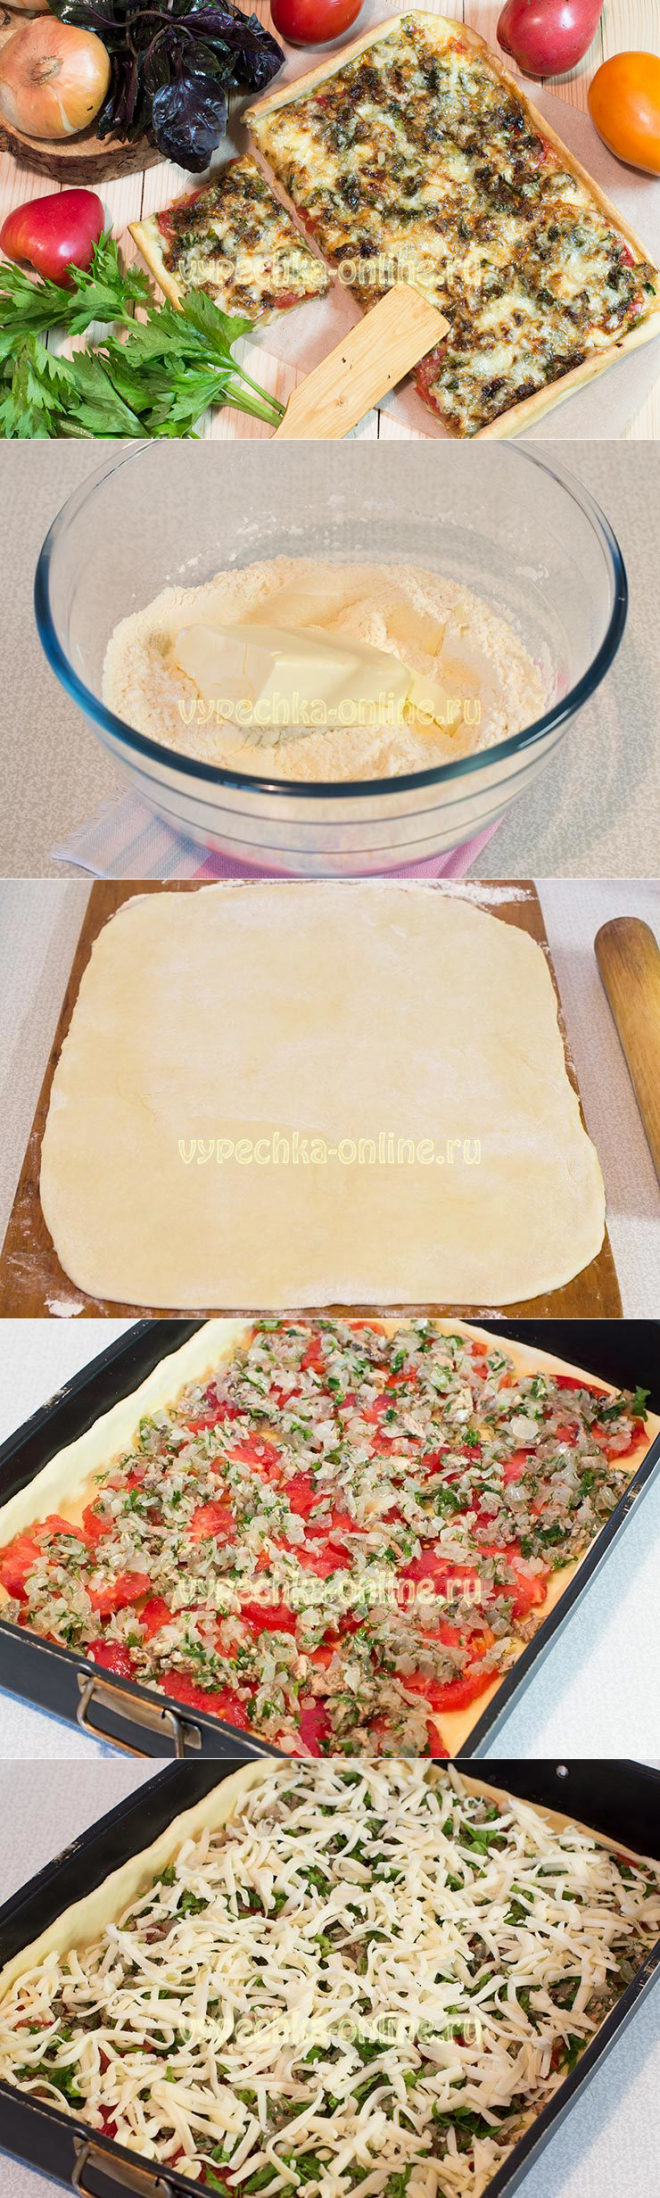 Домашняя пицца в духовке рецепт начинки. Начинка для пиццы. Начинка для пиццы в домашних. Ингредиенты для пиццы в домашних. Пицца Ингредиенты для начинки.